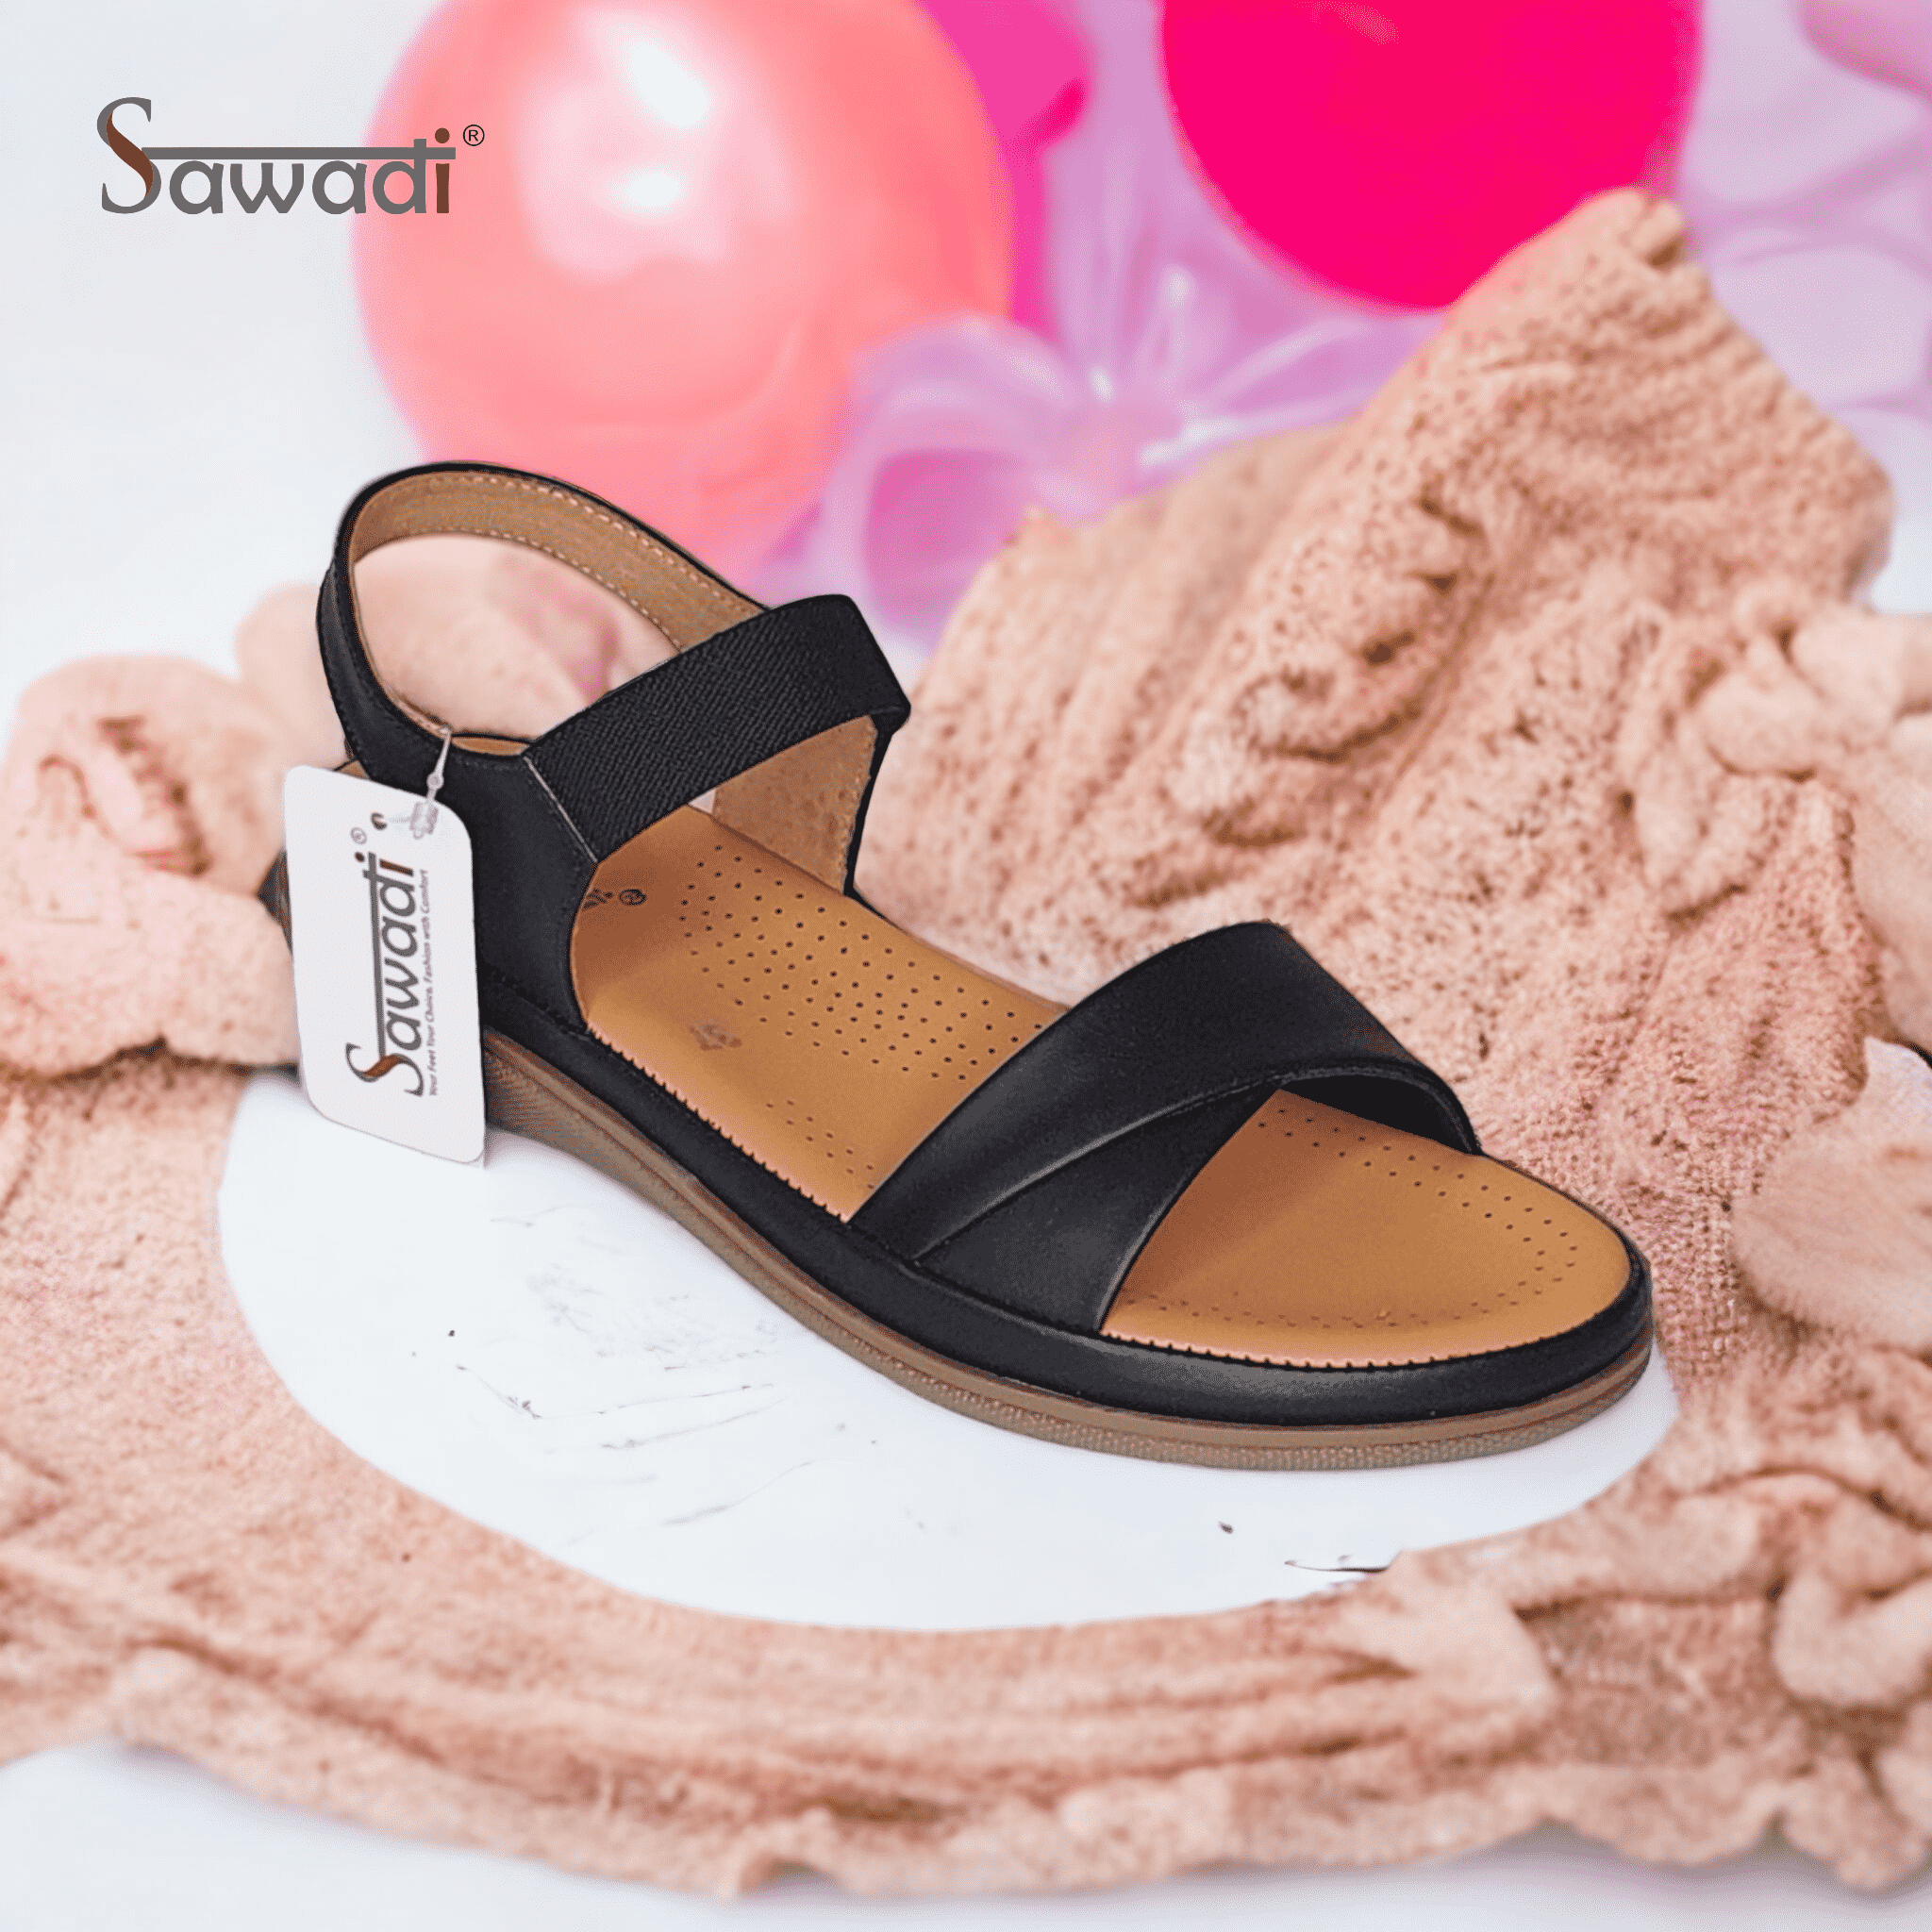 Sawadi Women Black TPR sandals